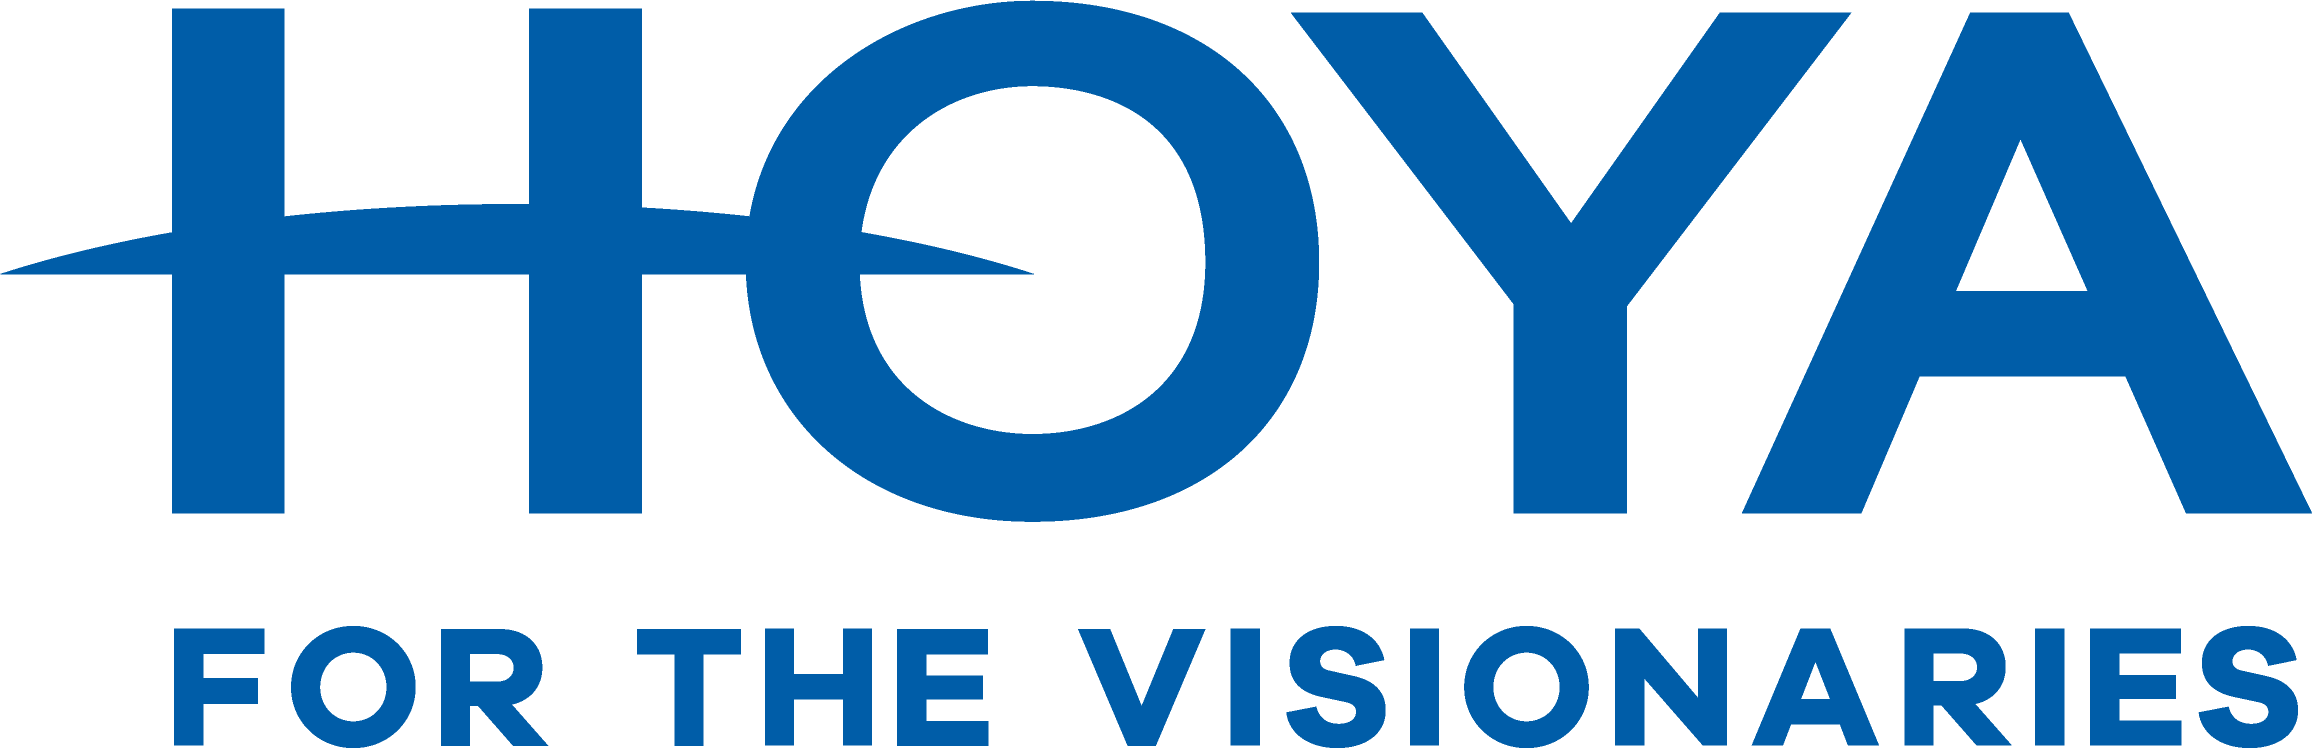 Hoya_Logo